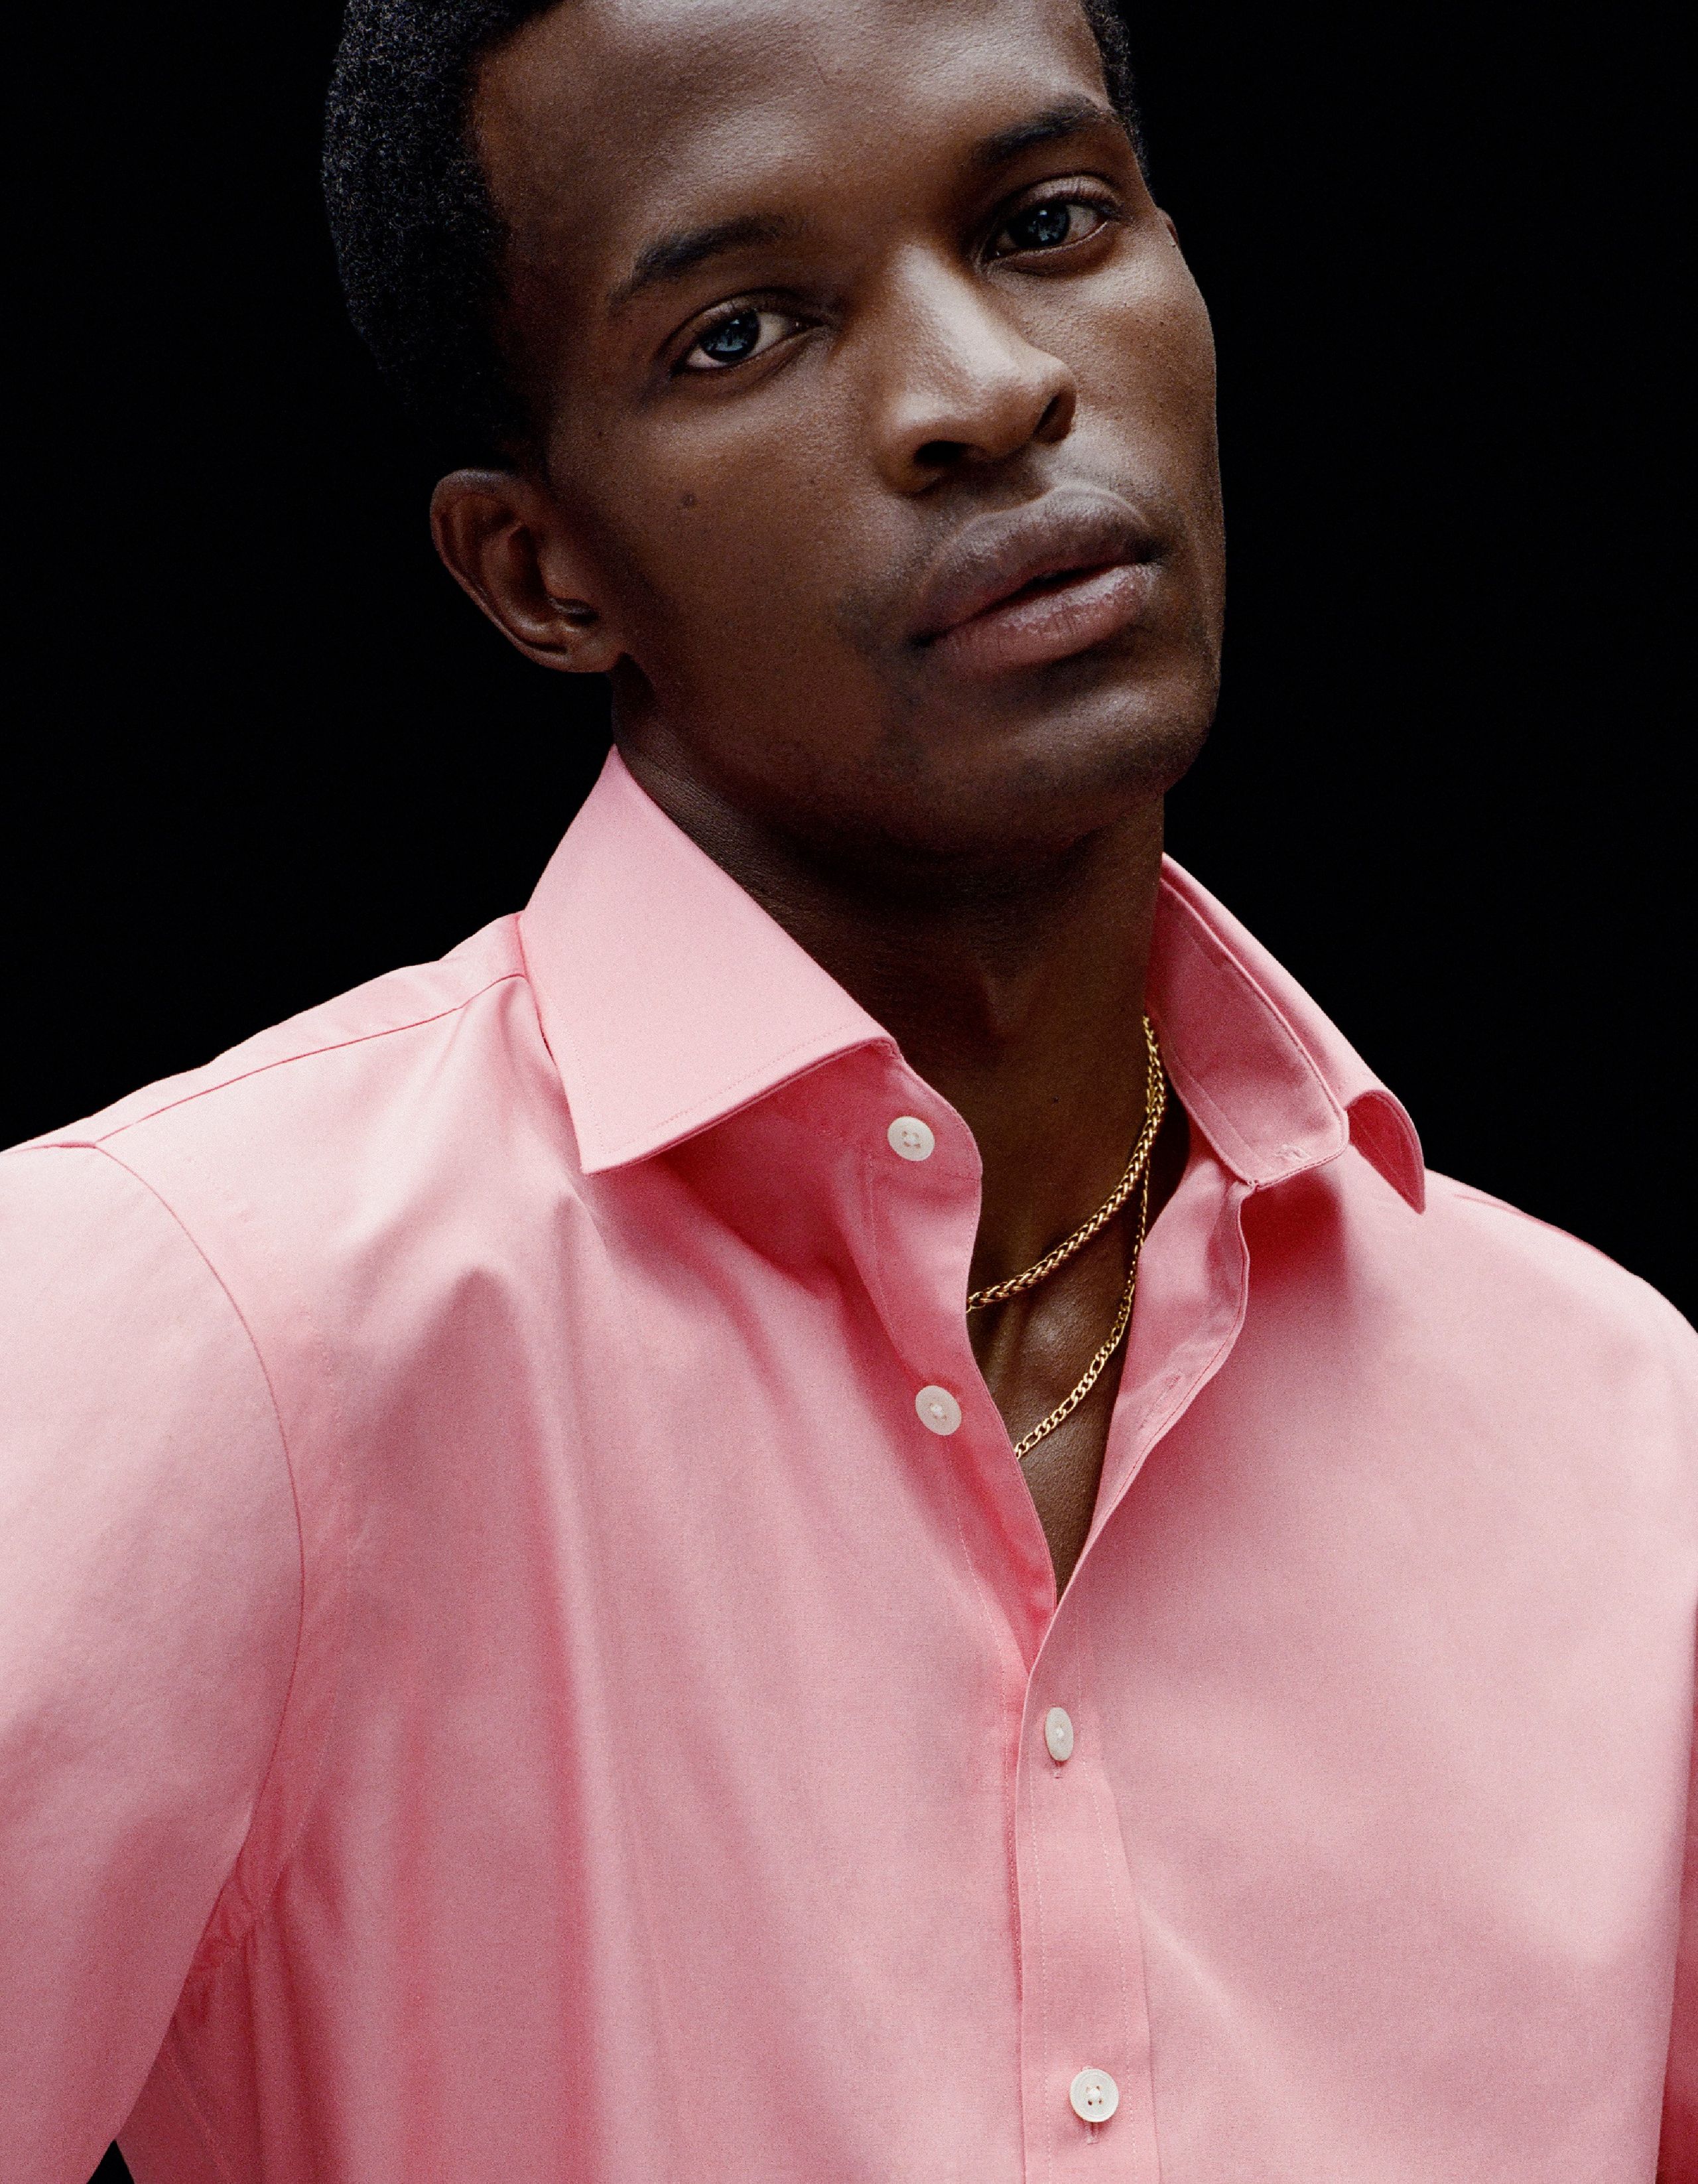 A man wears a pink shirt